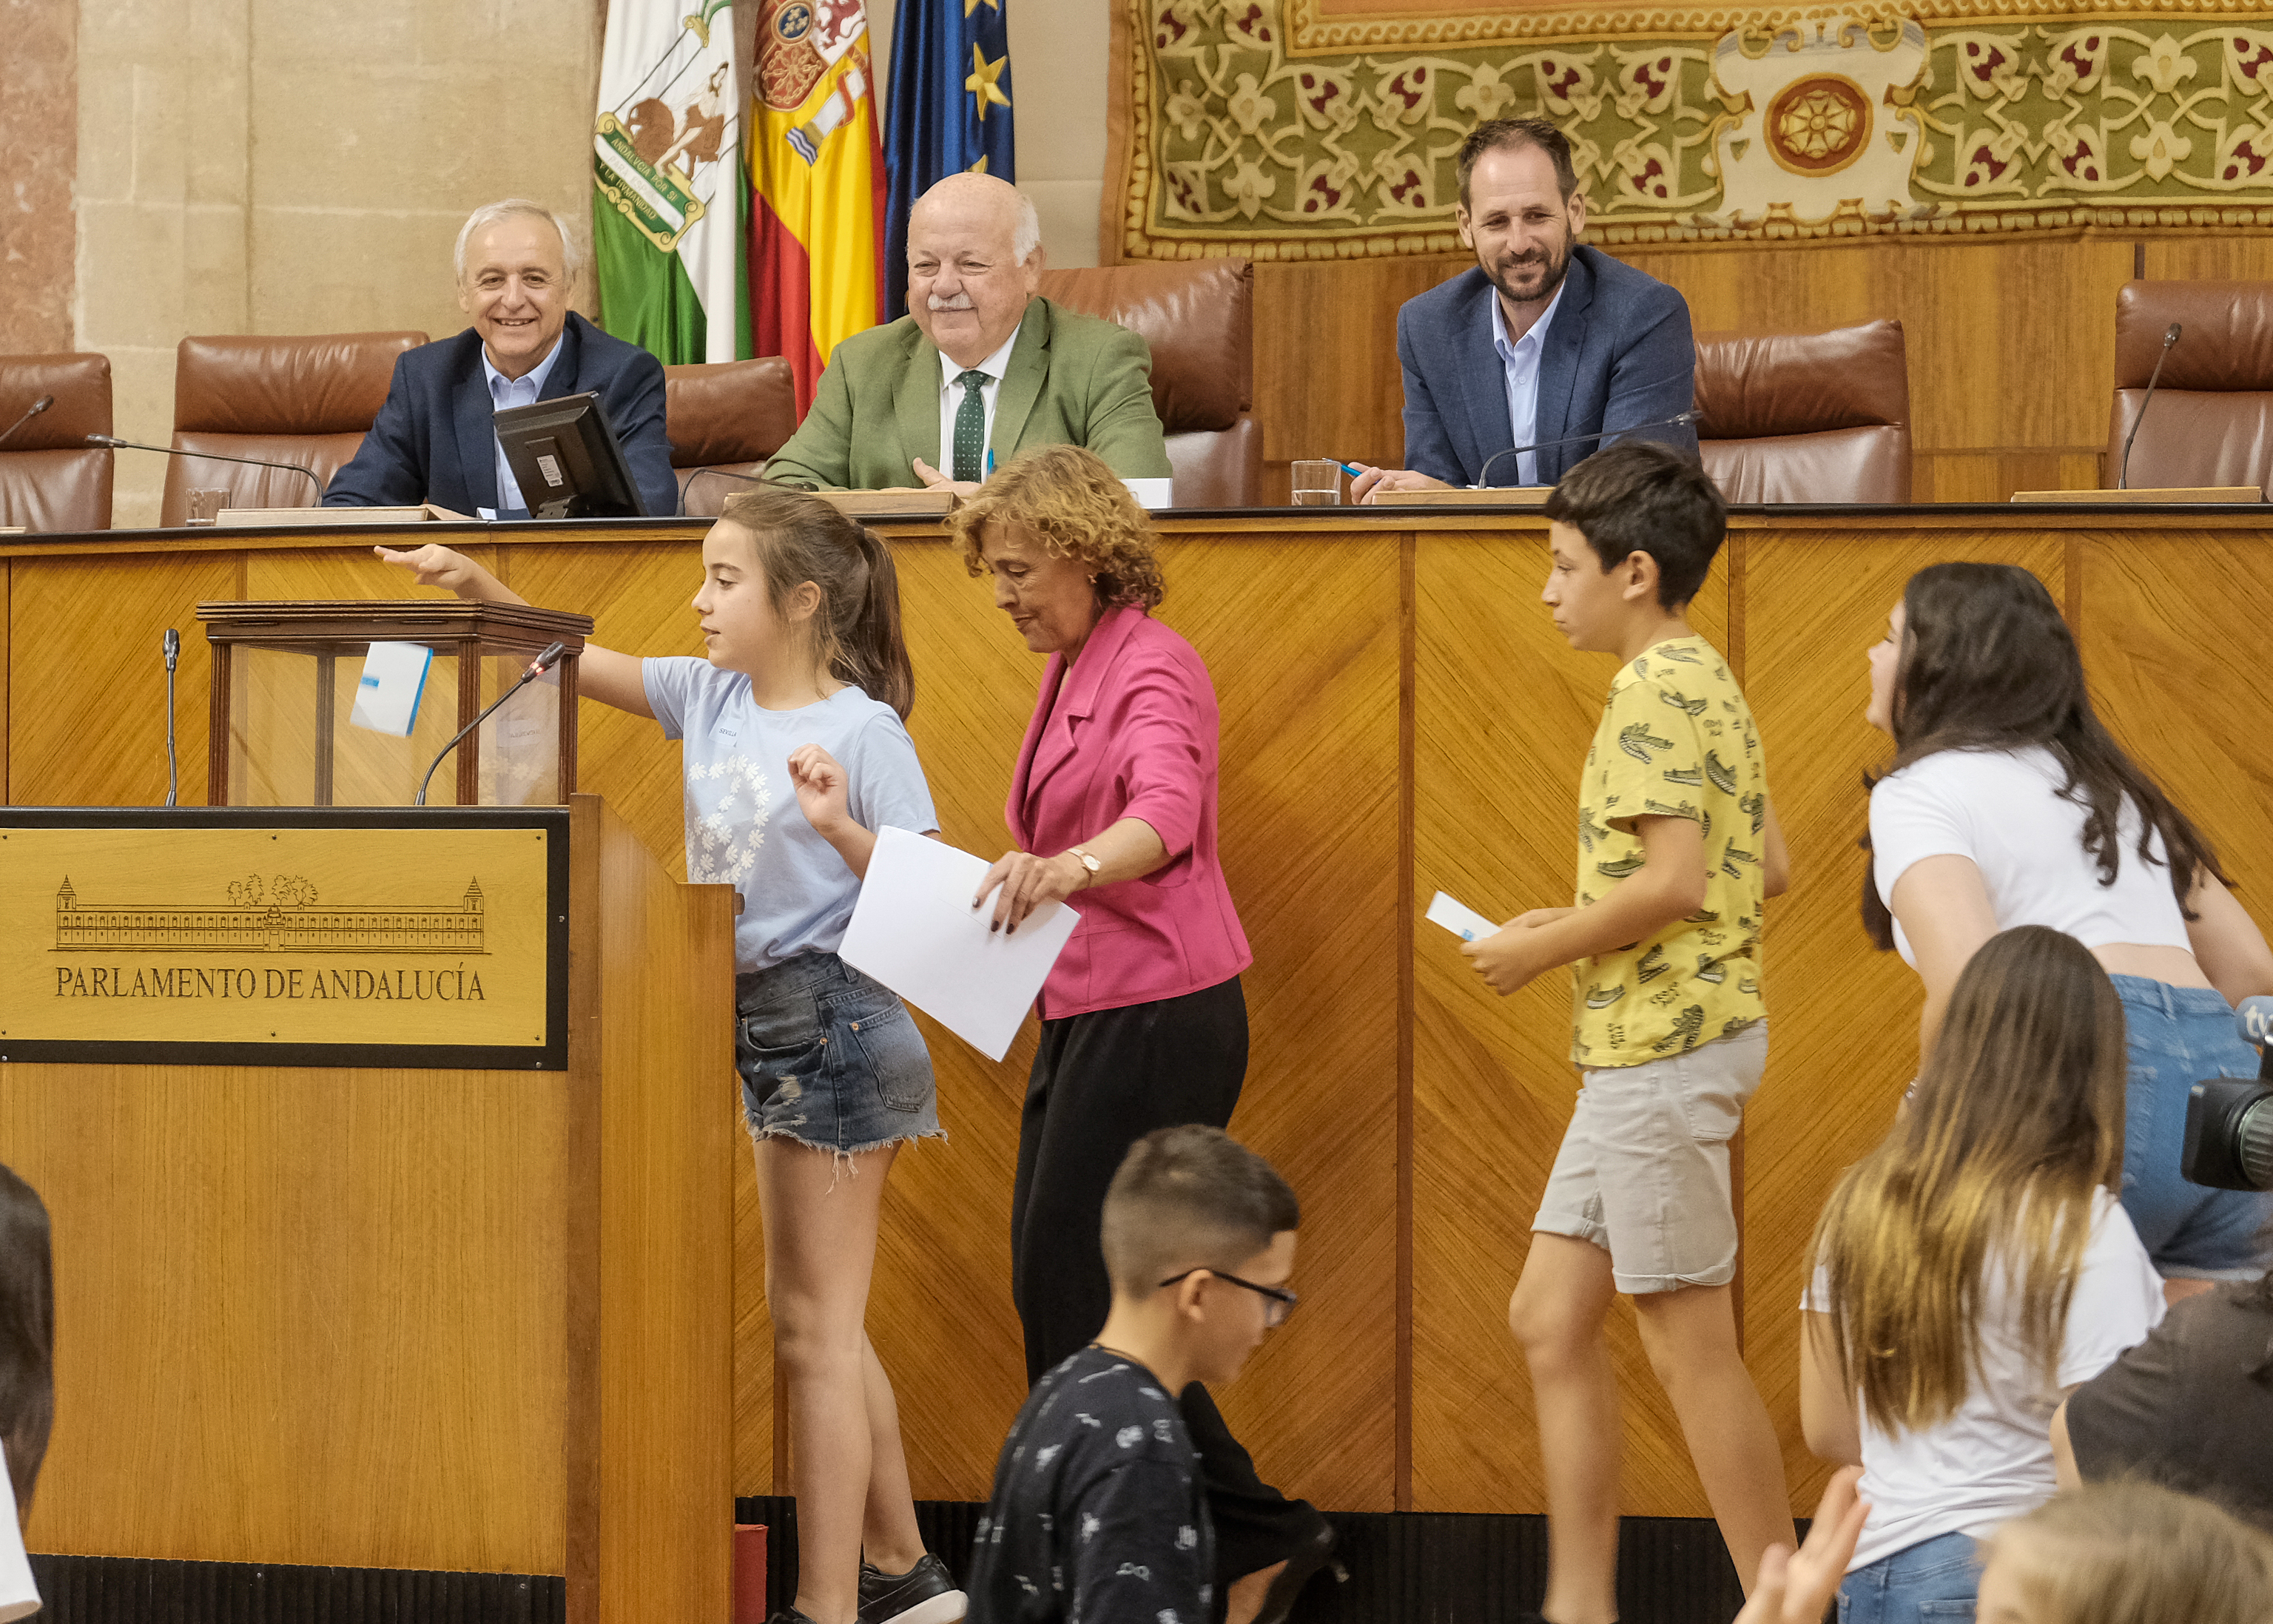 El presidente del Parlamento de Andaluca, Jess Aguirre, participa en el acto organizado por Aldeas Infantiles SOS denominado "Diputados por un Da" 